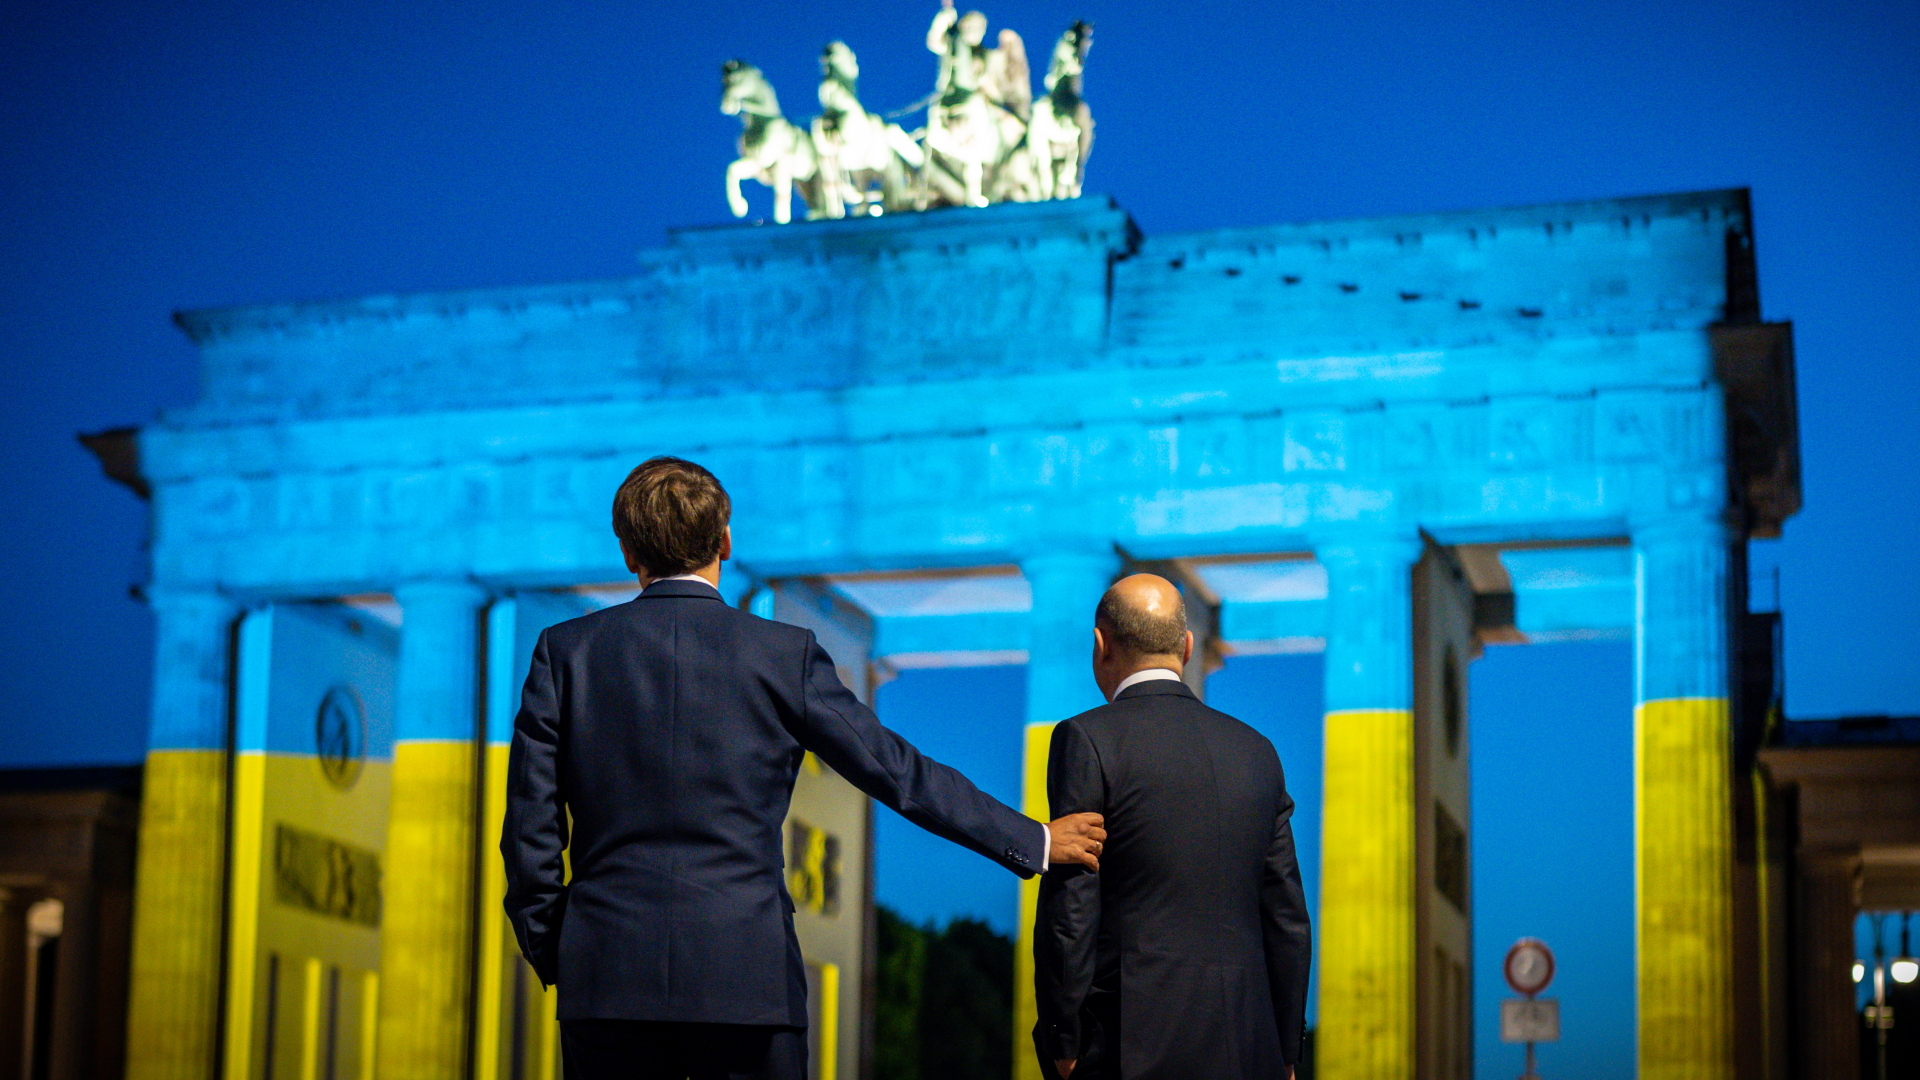 Emmanuel Macron und Olaf Scholz vor dem Brandenburger Tor, das in den Farben der Ukraine erscheint. | dpa